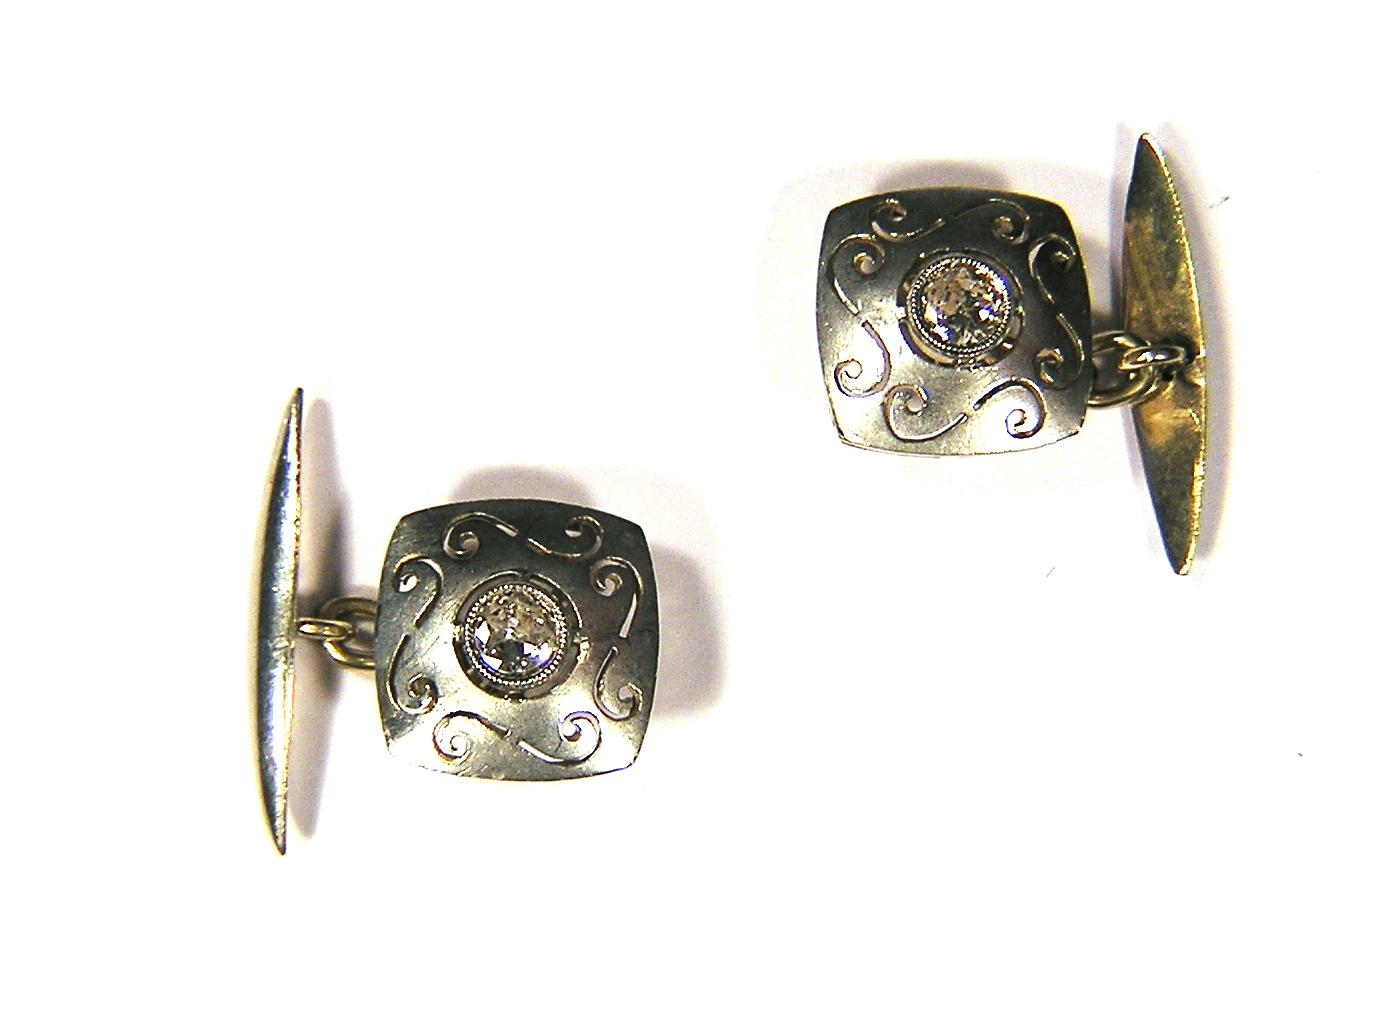 1920er Manschettenknöpfe aus Silber und Gelbgold mit Diamanten 0,20 ctw ca.
Größe: 14 mm / 0,551 Zoll
Bereit zur Auslieferung. Auf Wunsch kann es per Expressversand verschickt